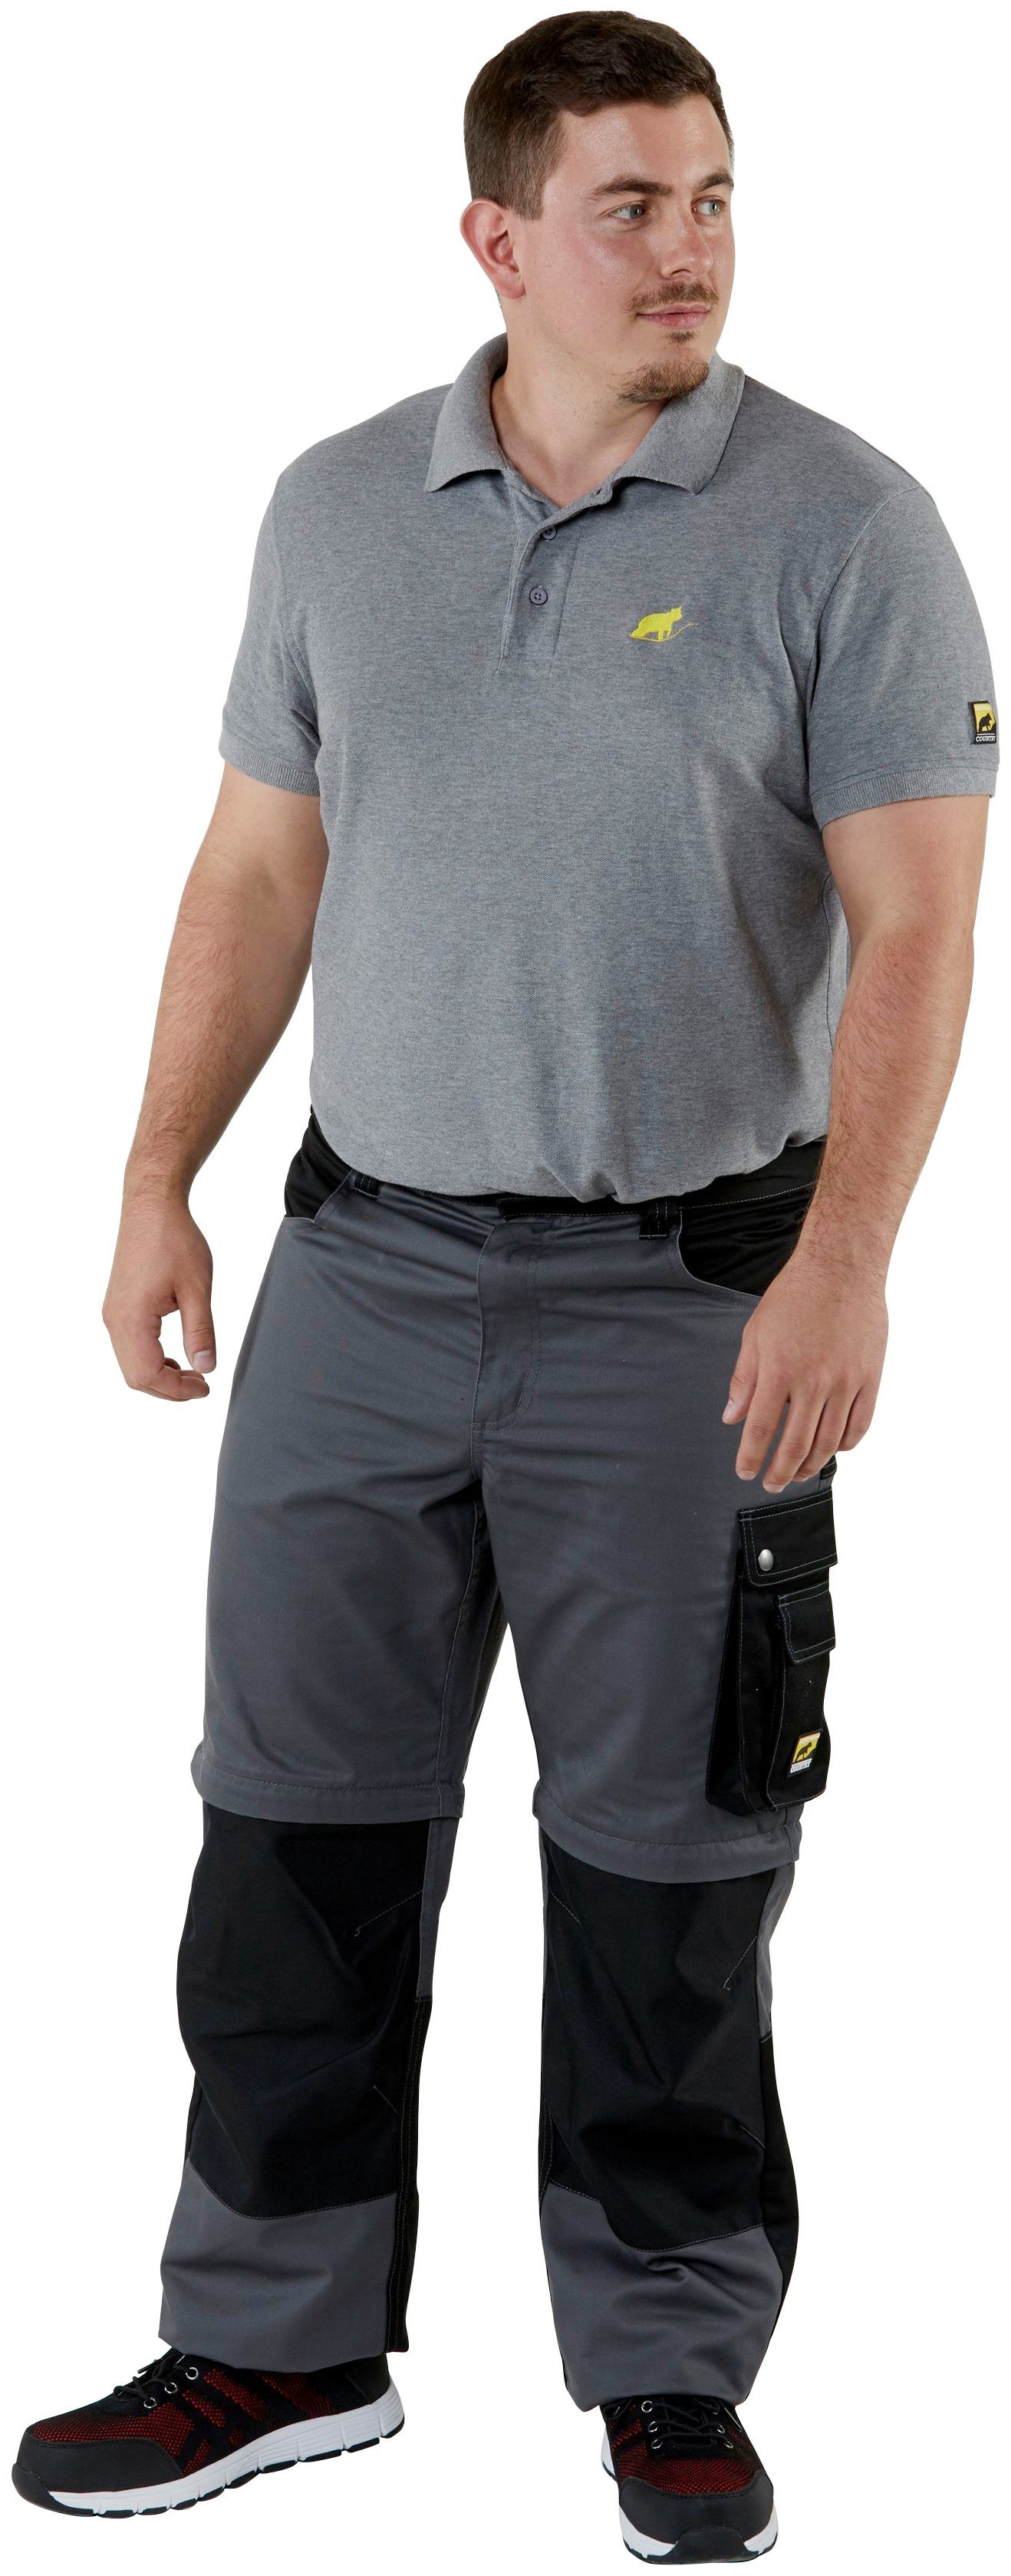 8 Arbeitshose möglich, Shorts und einem Funktion: Worker in Arbeitshose lange Kniebereich, Beinverlängerung Zipp-off Taschen) mit (verstärkter Northern Country